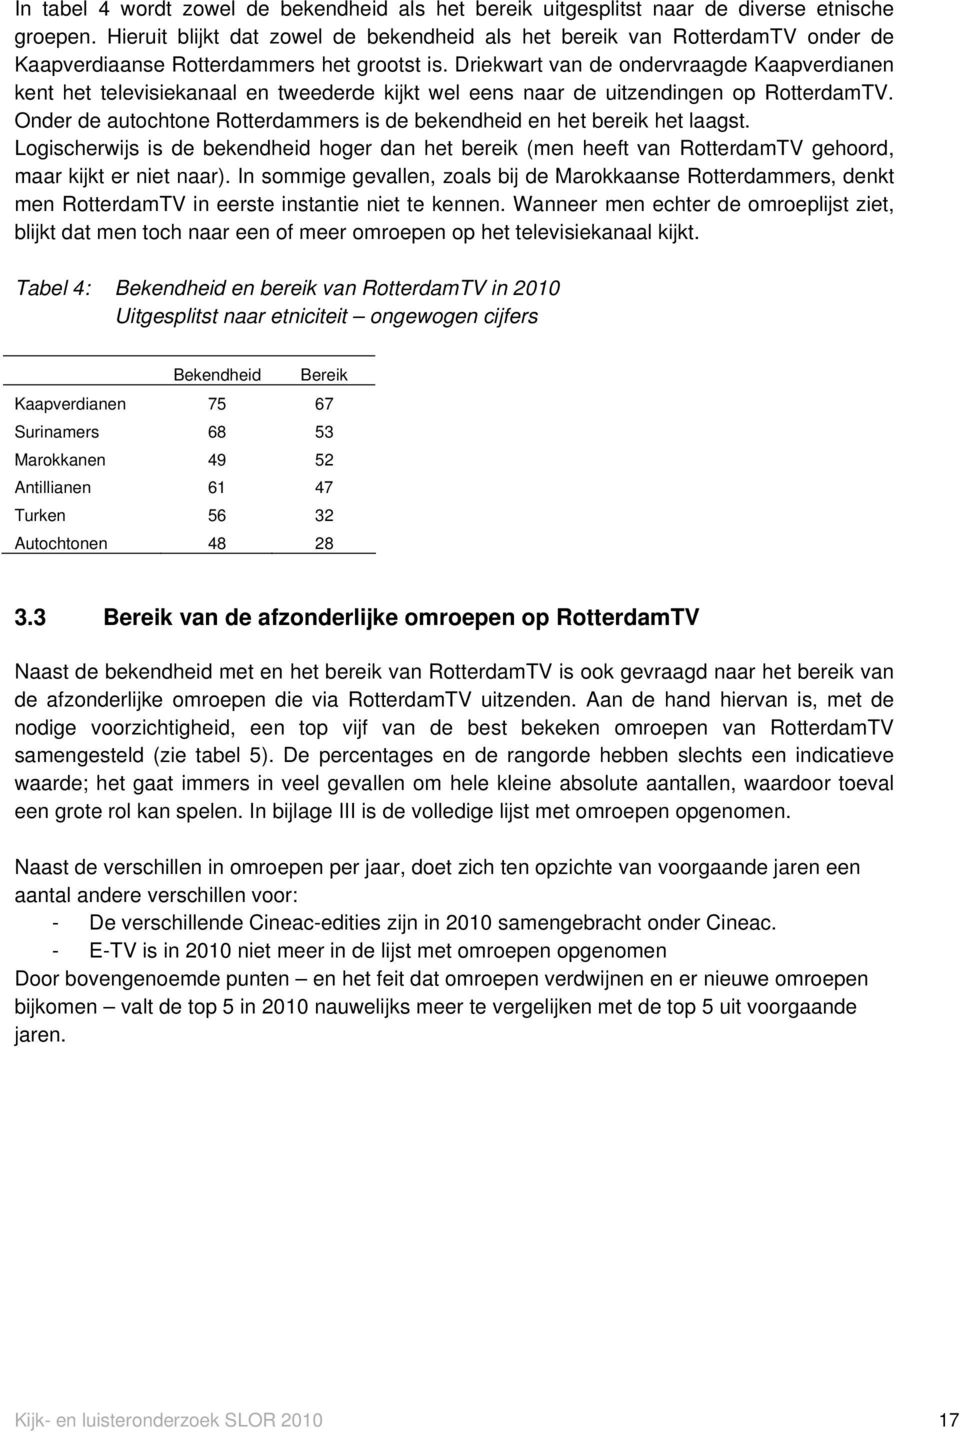 Driekwart van de ondervraagde Kaapverdianen kent het televisiekanaal en tweederde kijkt wel eens naar de uitzendingen op RotterdamTV.